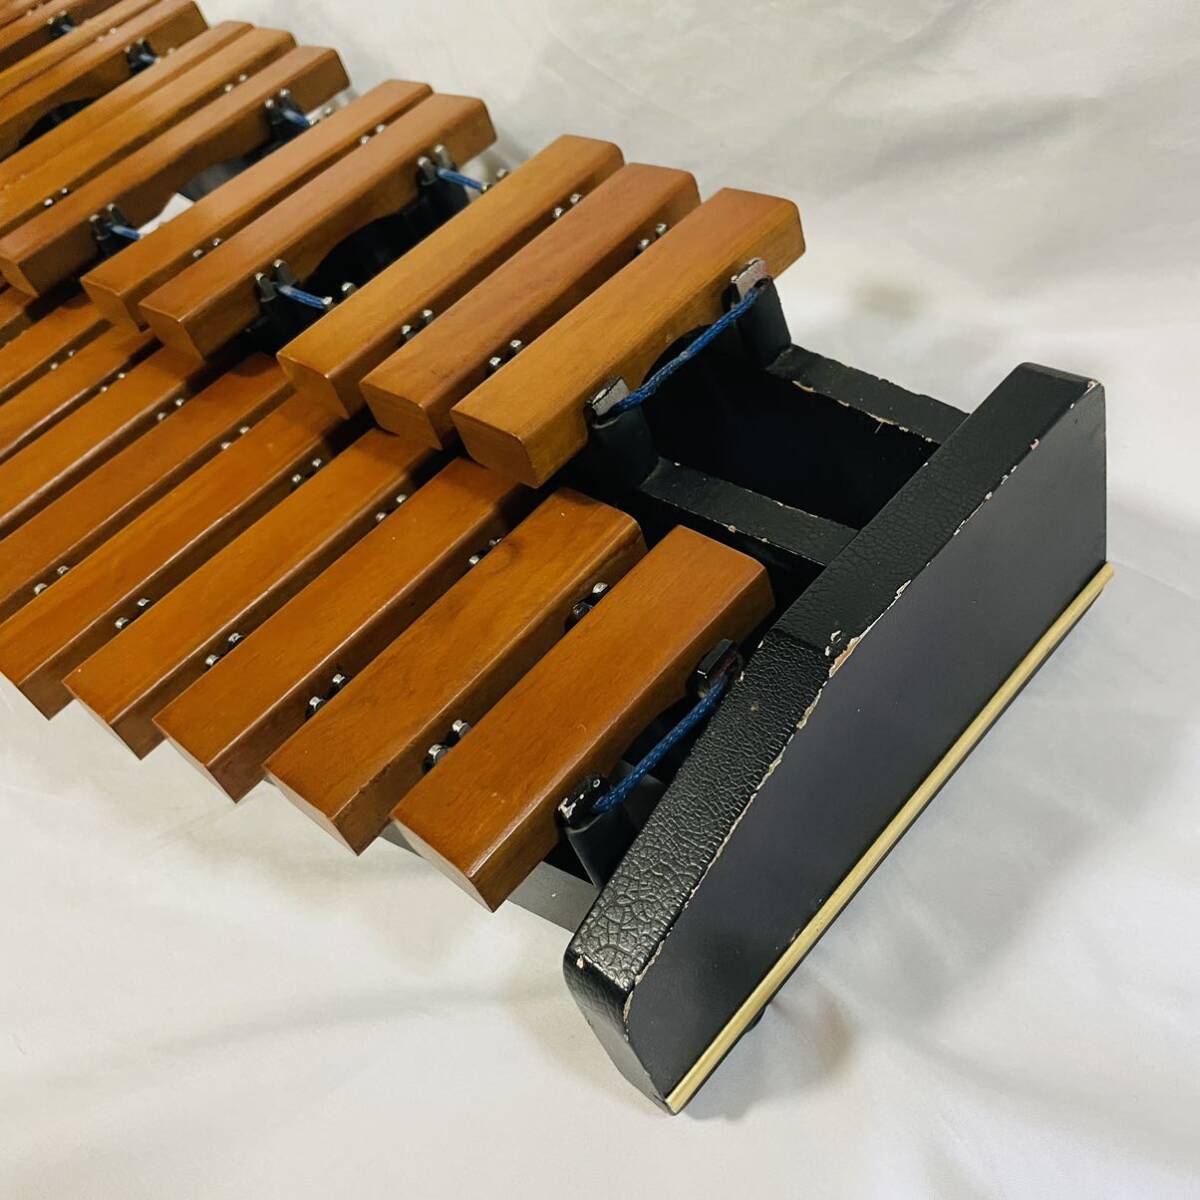 KOROGIkoorogi xylophone desk xylophone 